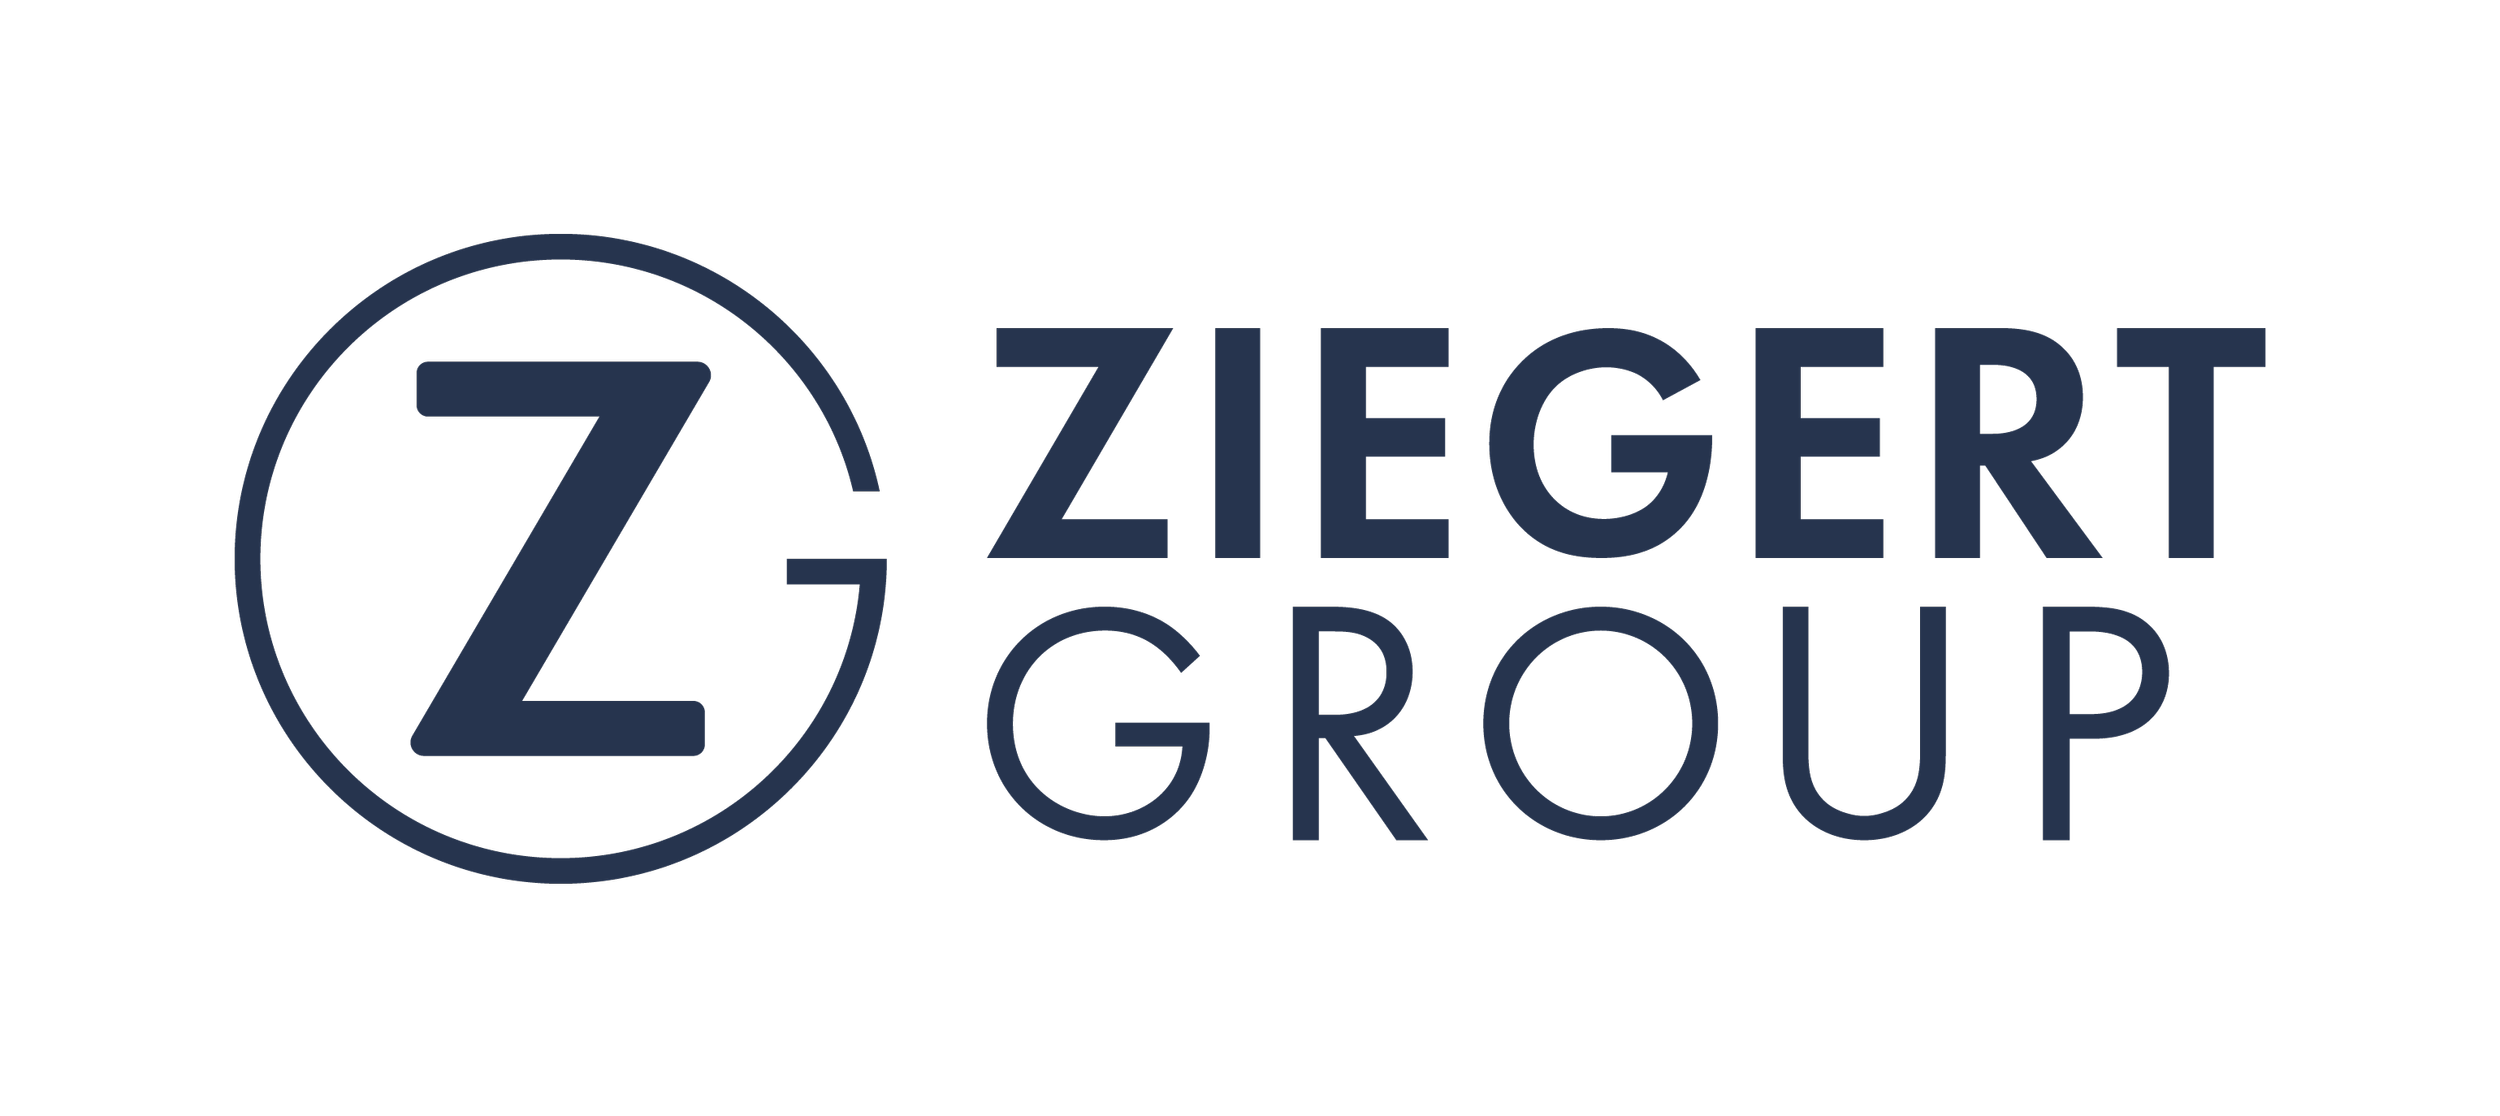 ZIEGERT-Group-Logo_2500px-1.png